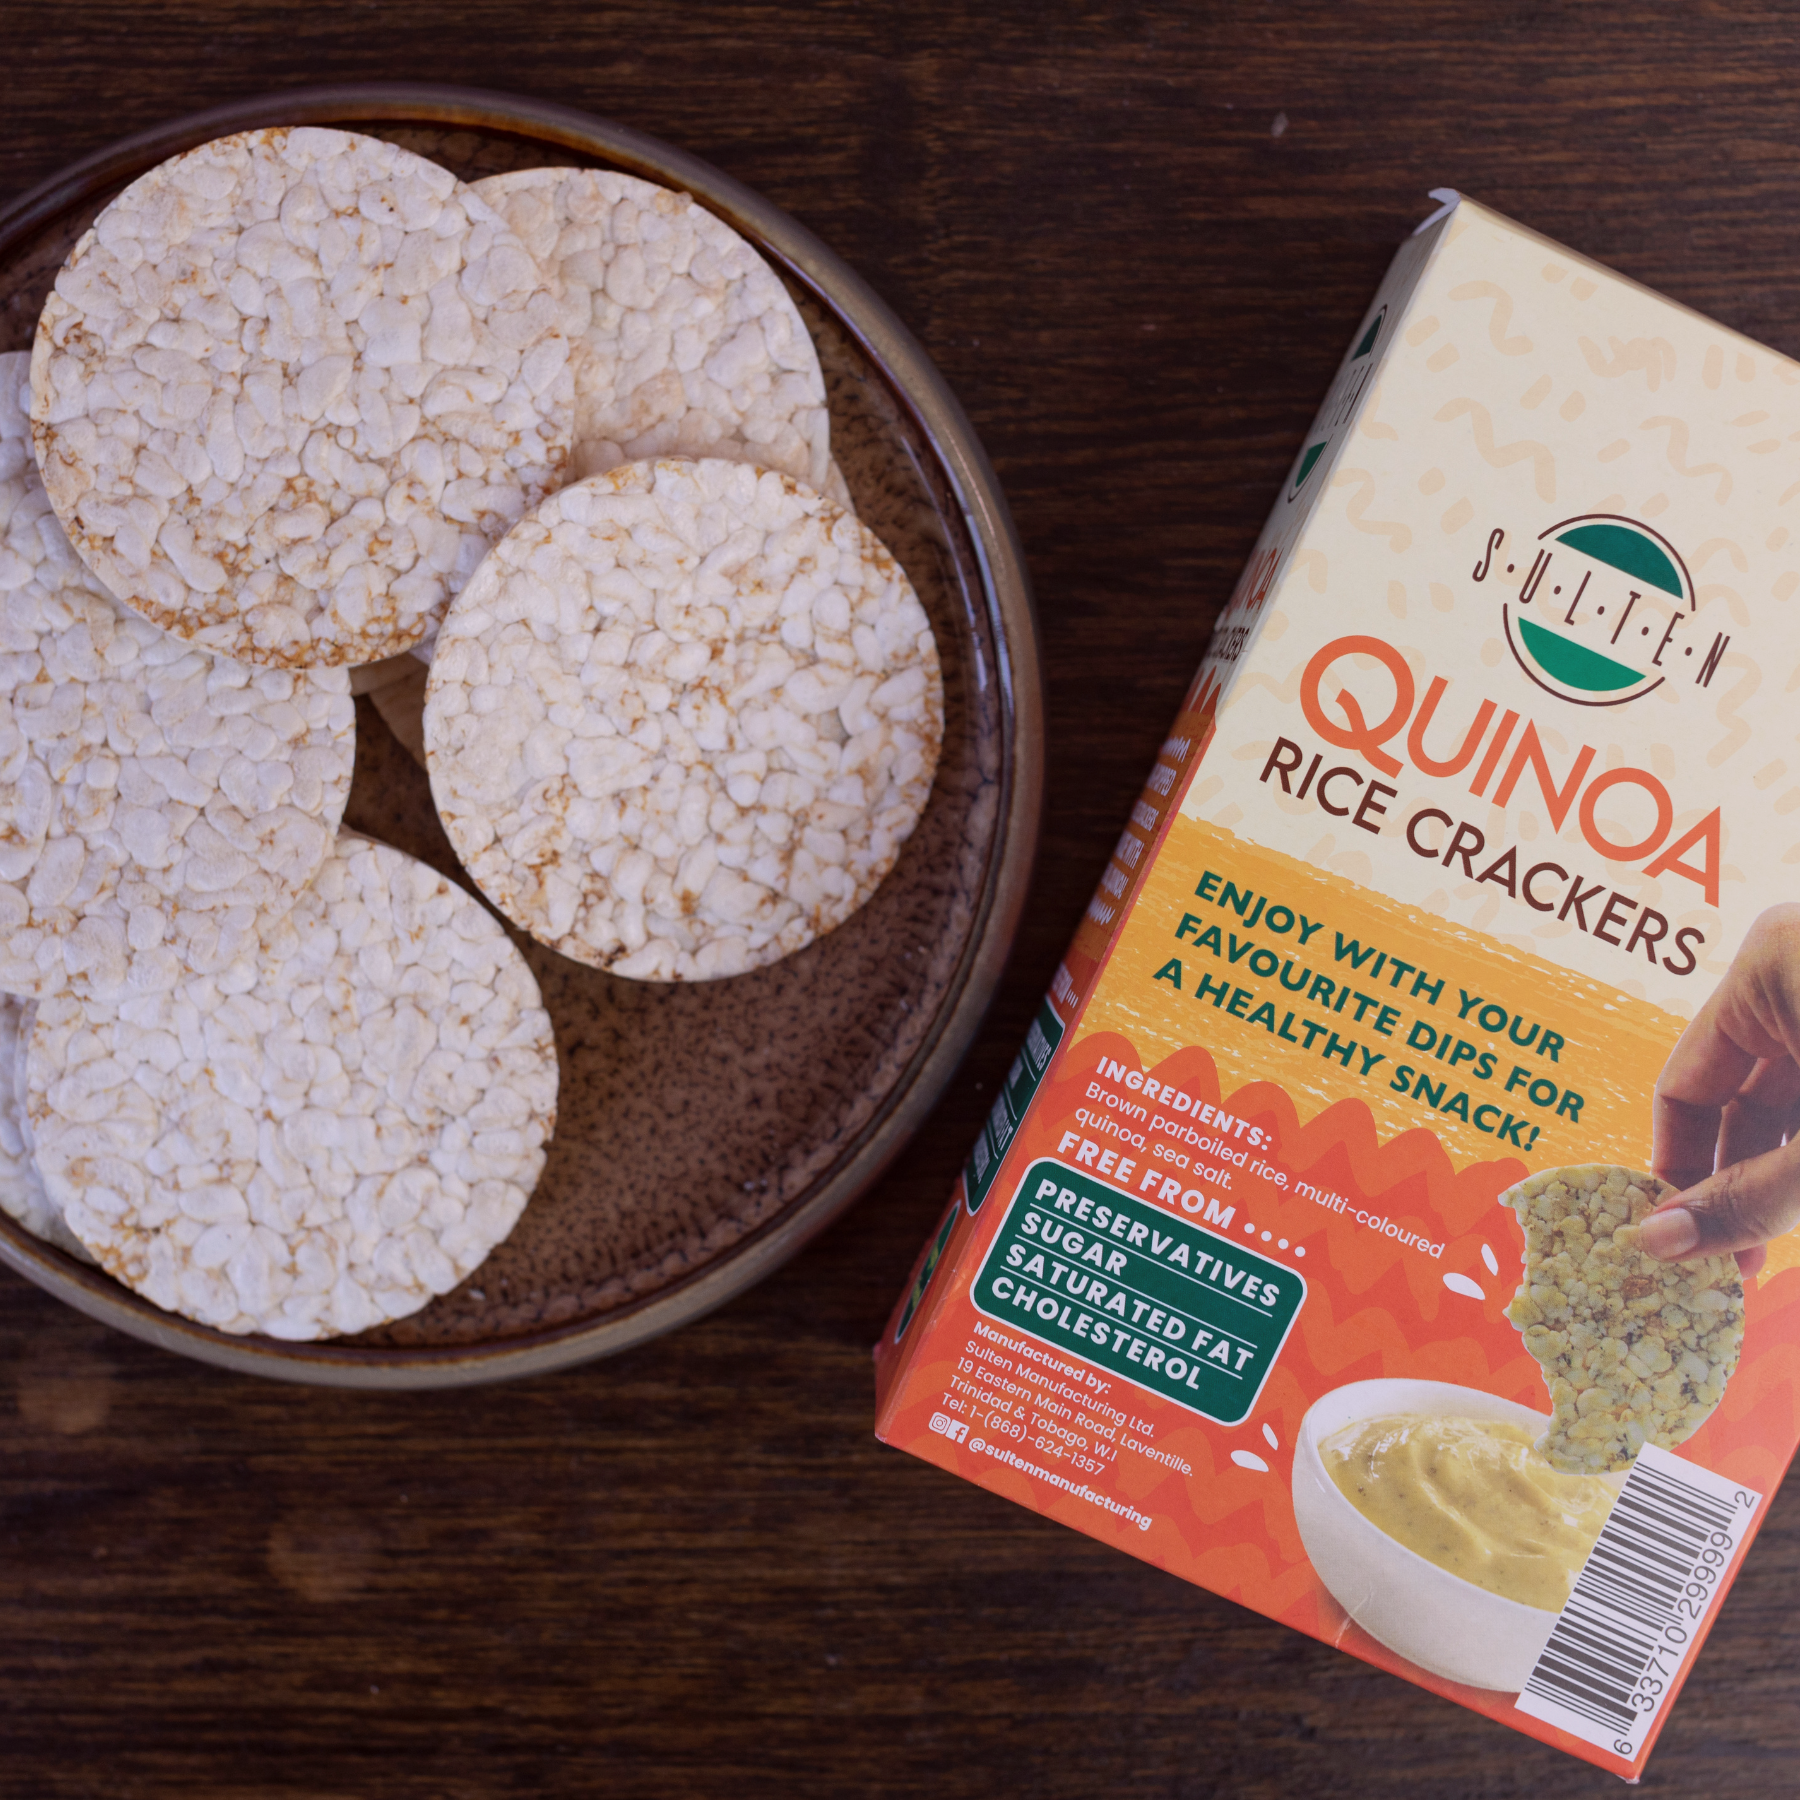 Quinoa Rice Crackers